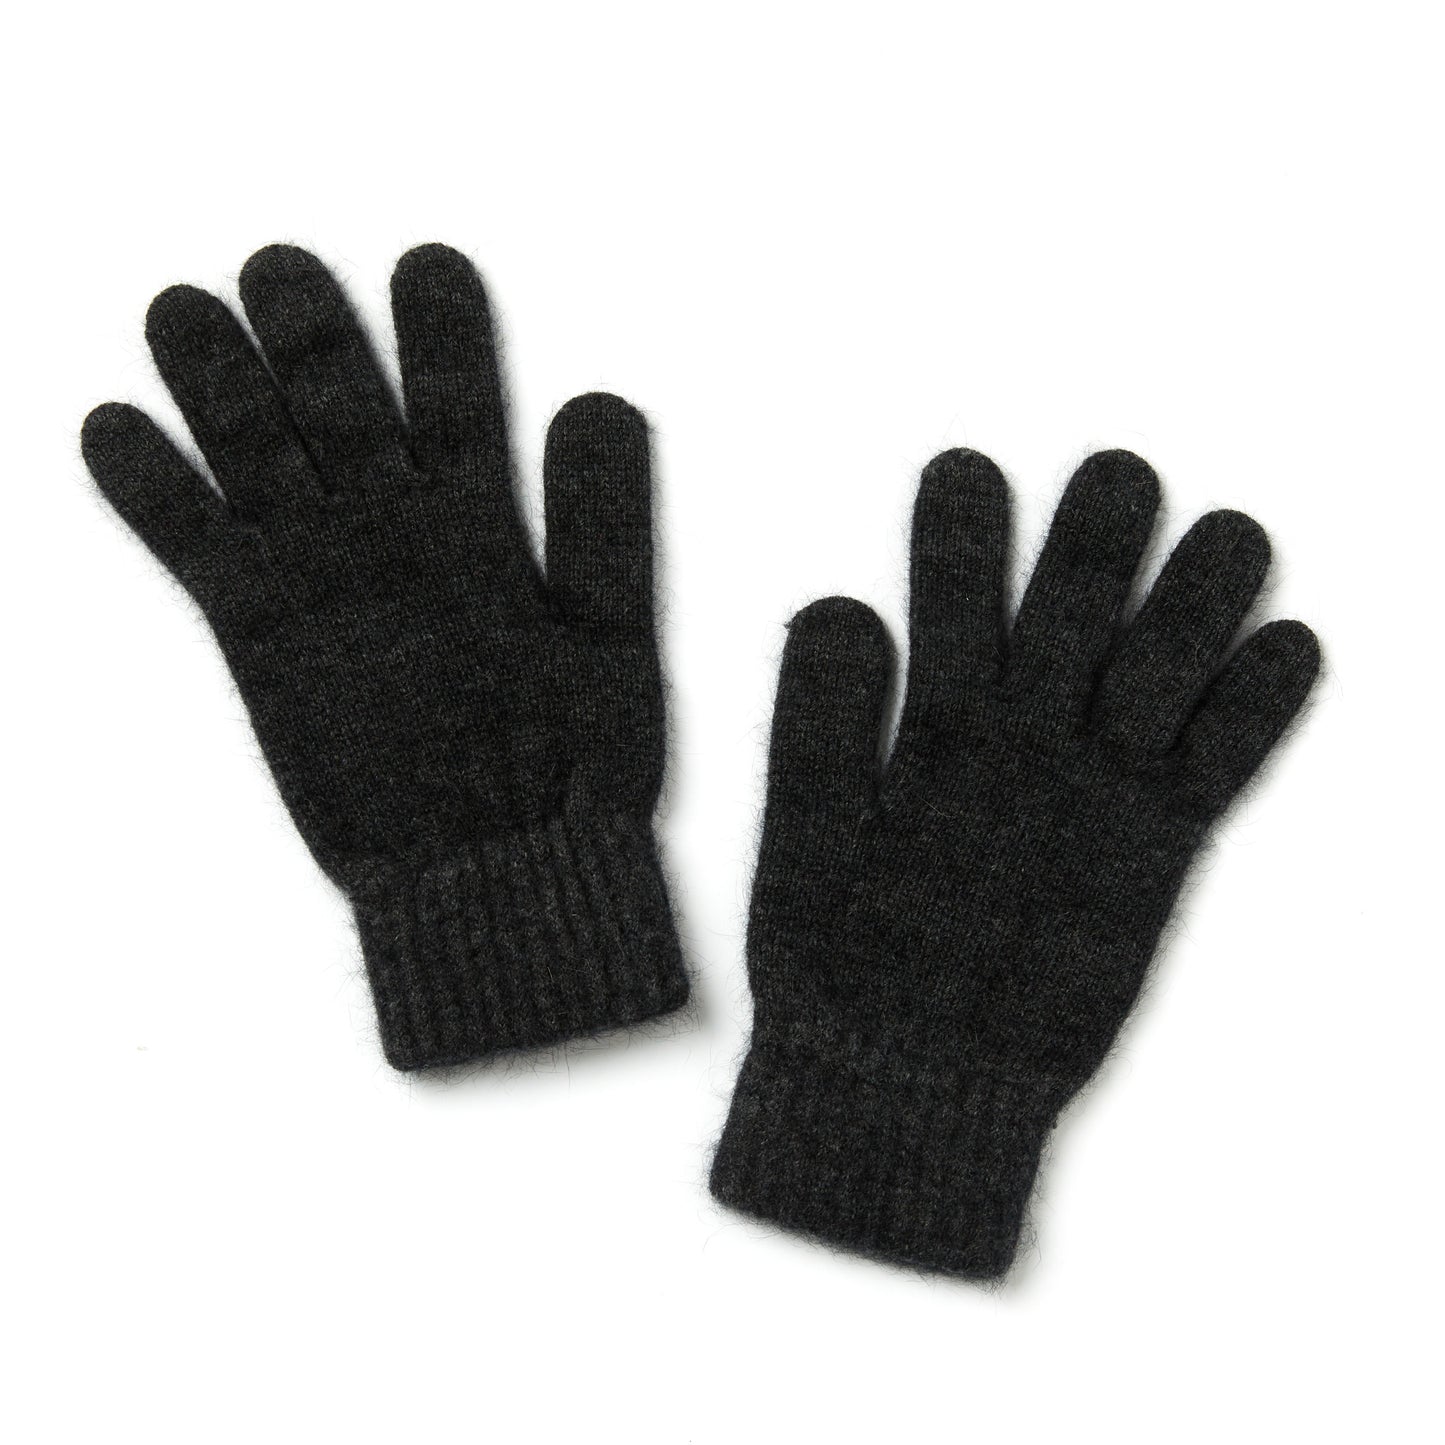 Possum Merino Glove